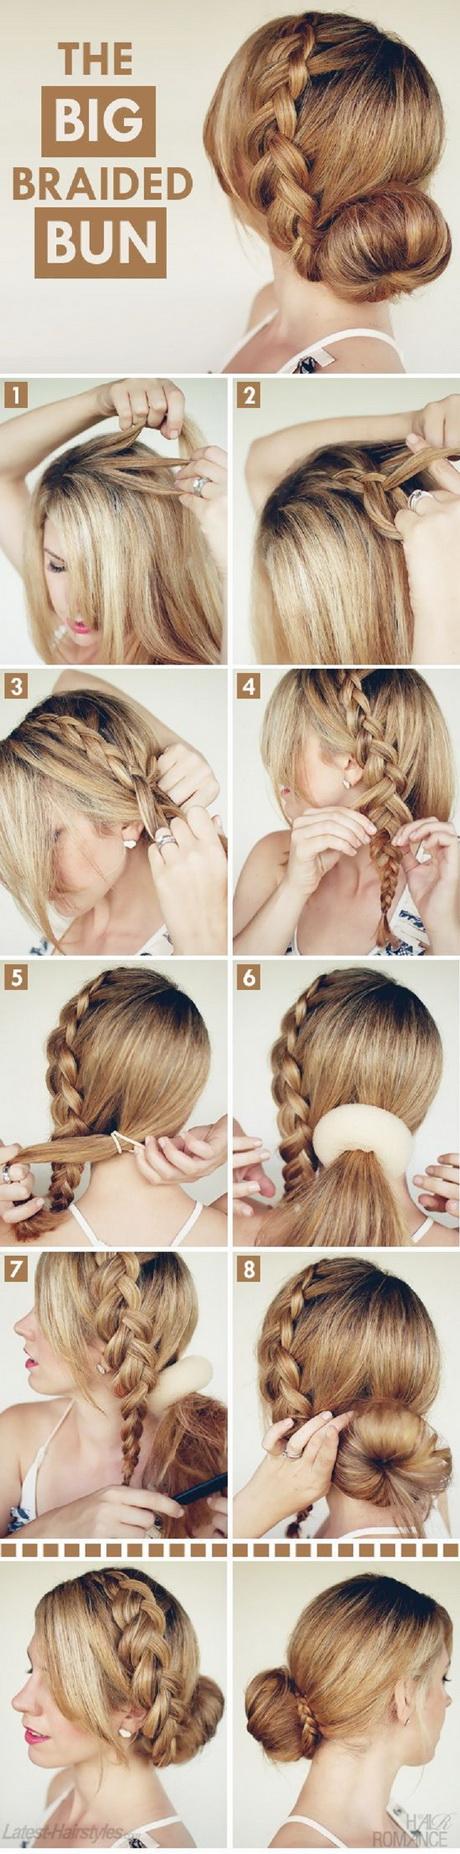 Braid hairstyles tutorials braid-hairstyles-tutorials-84_16